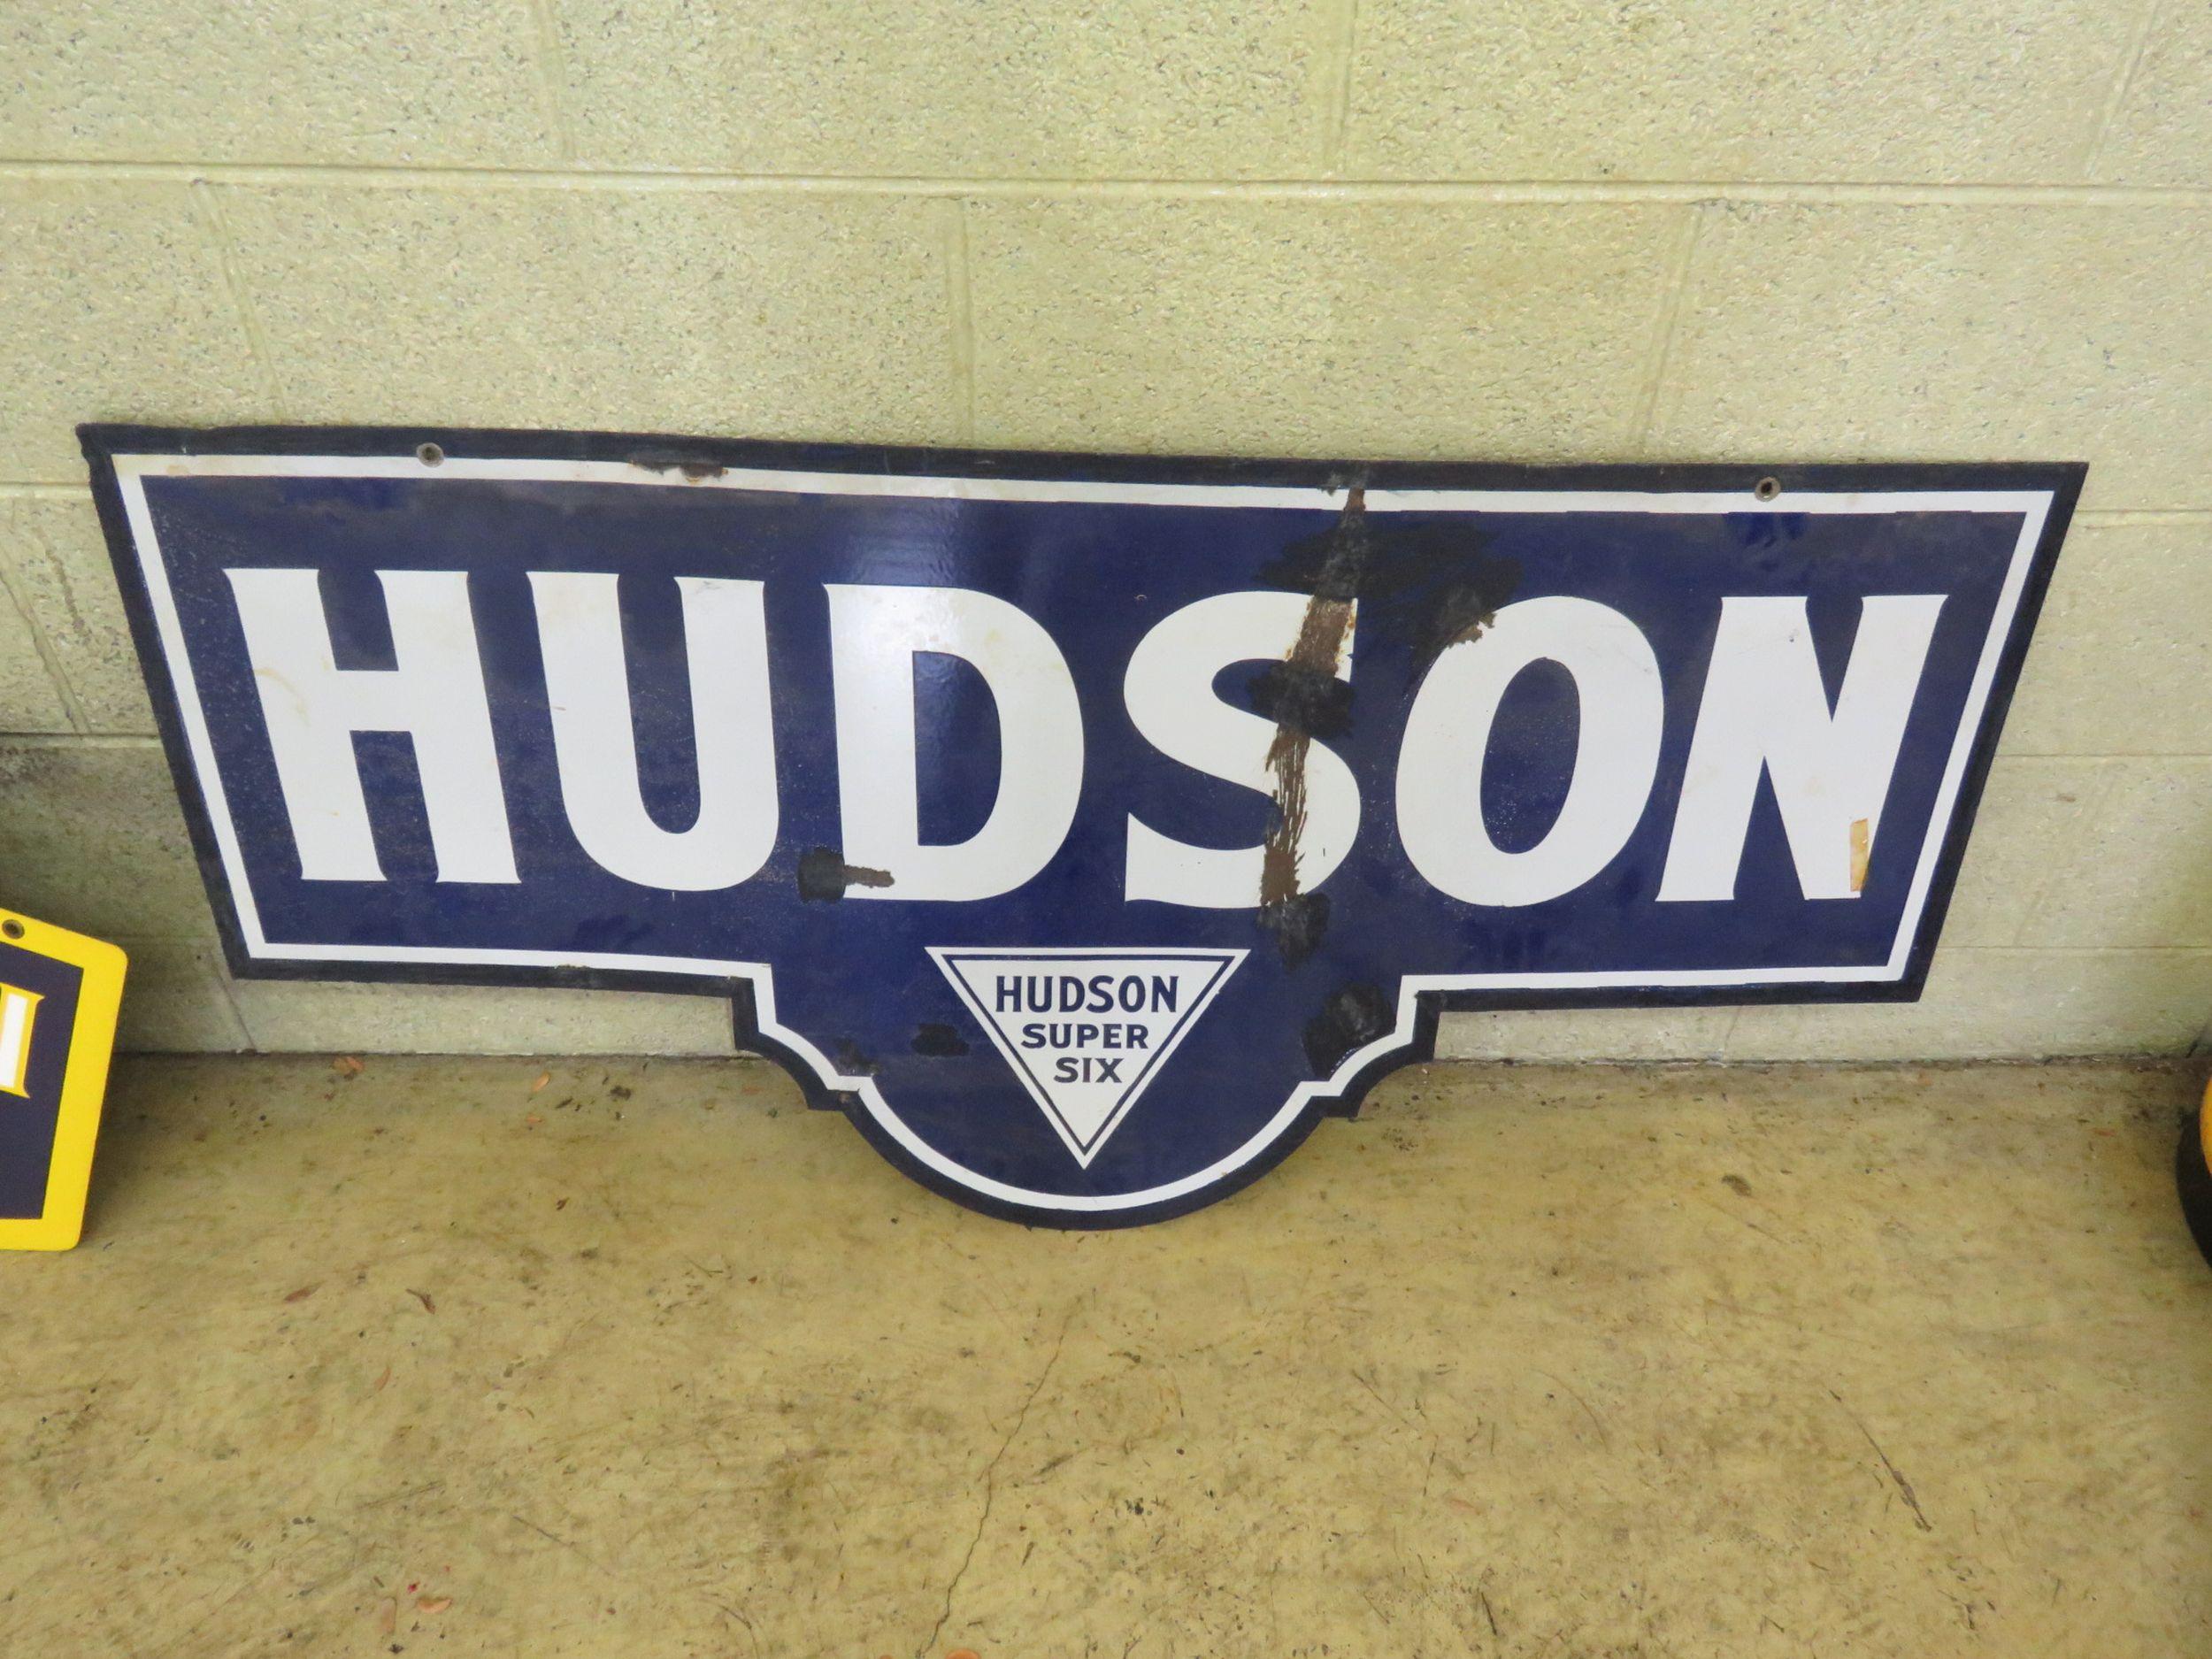 Hudson-Essex Porcelain Sign